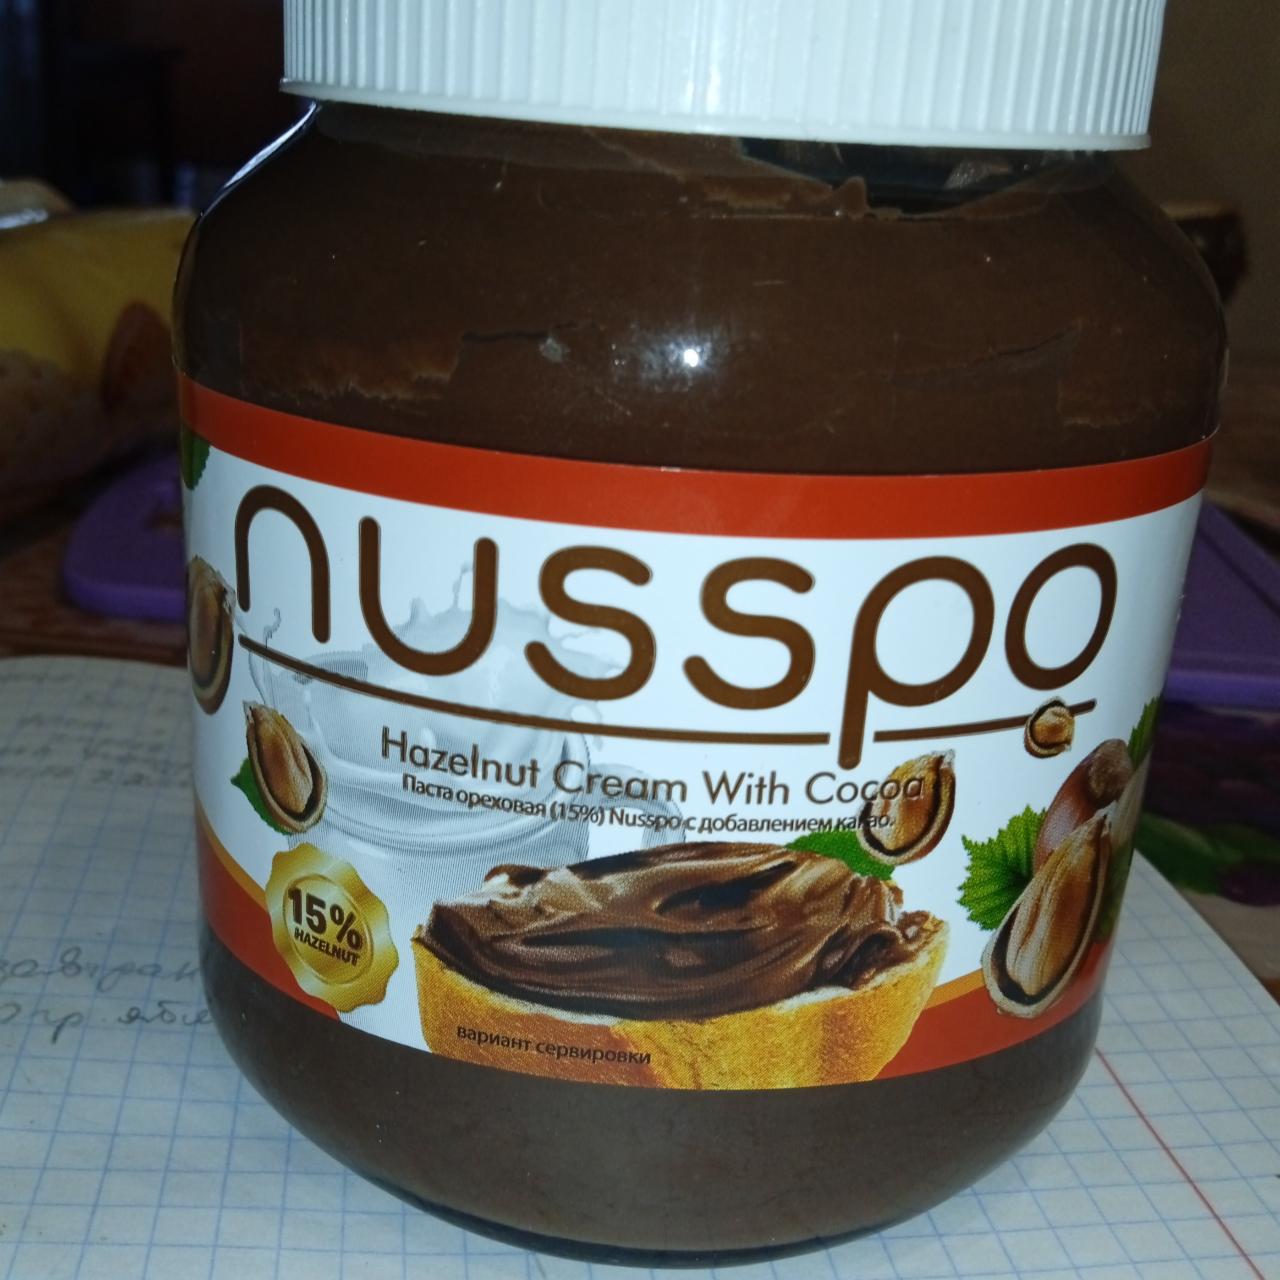 Фото - Паста ореховая 15% с добавление какао Nusspo